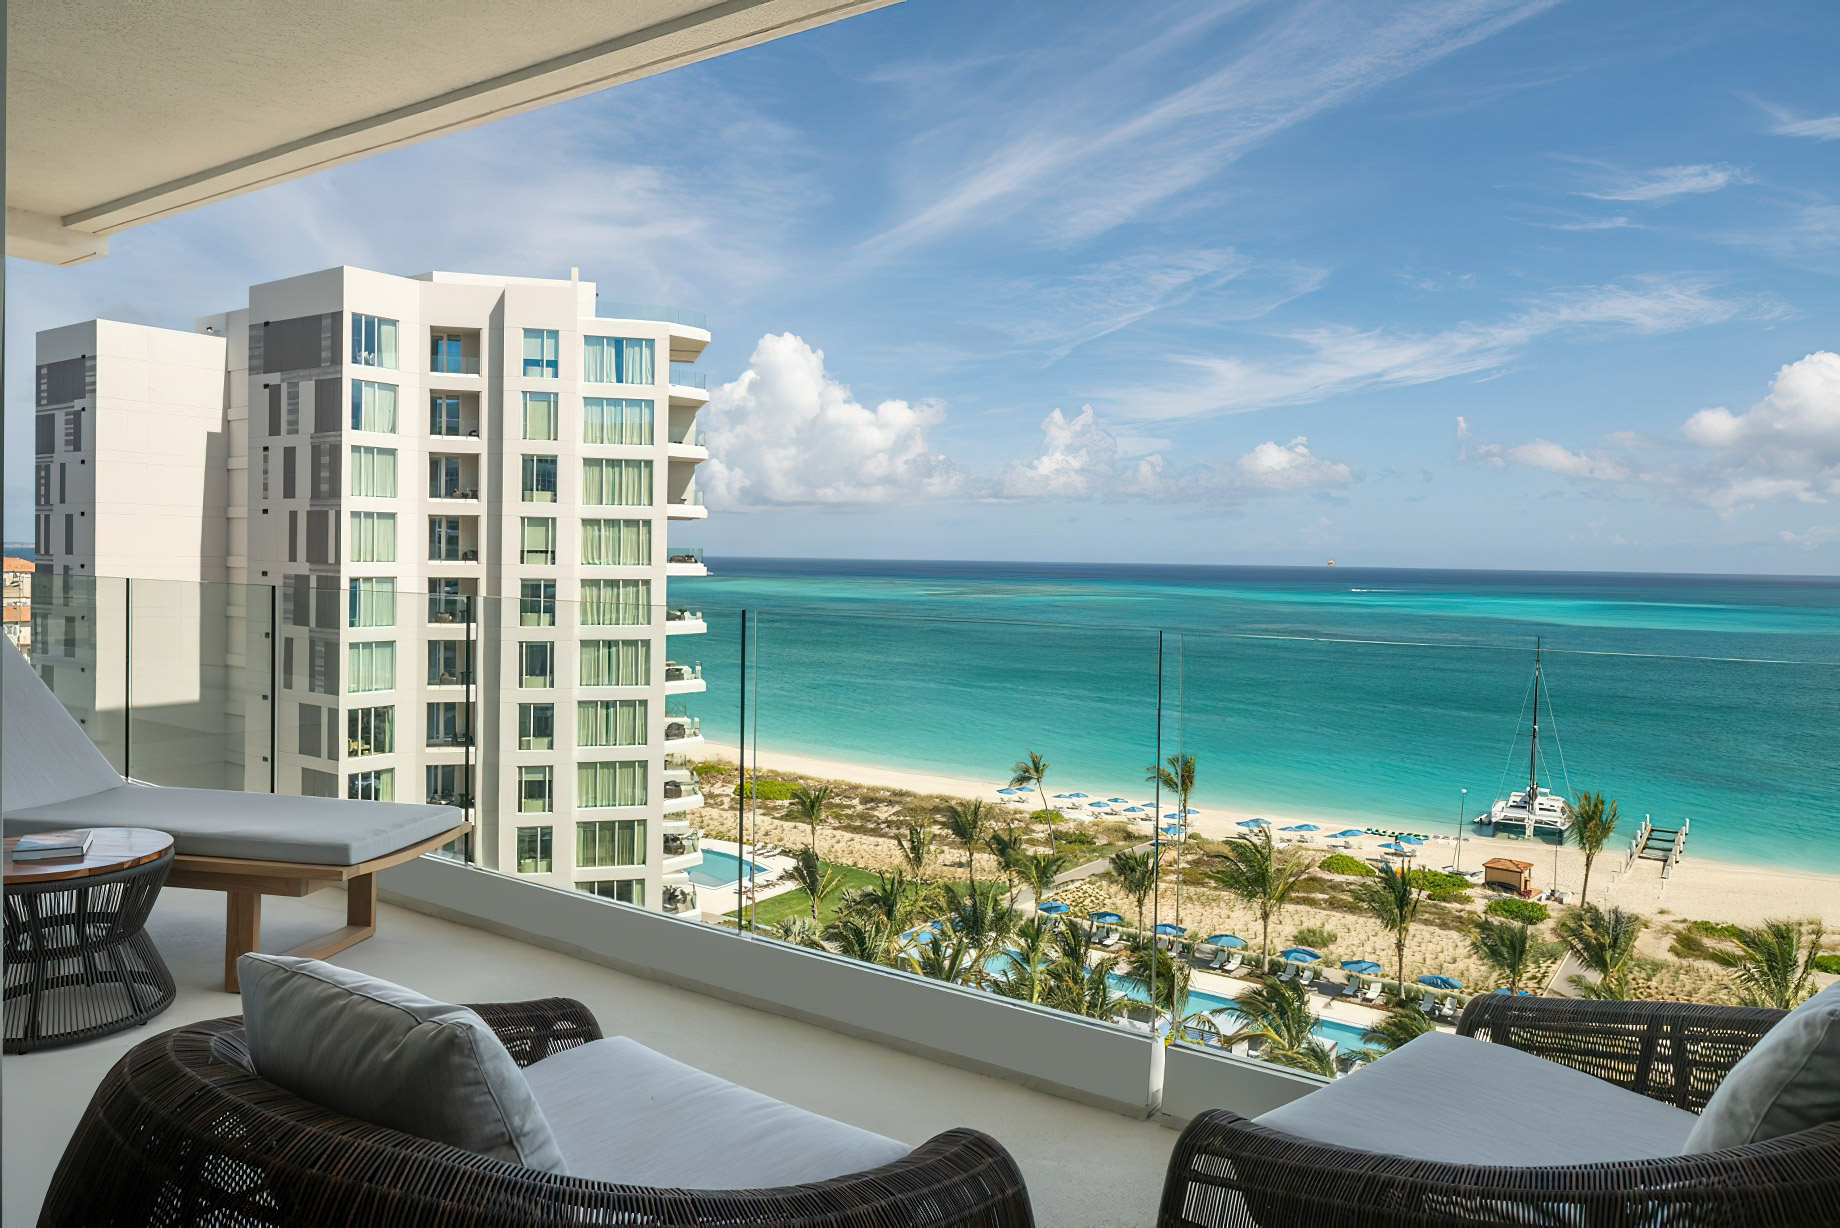 The Ritz-Carlton, Turks & Caicos Resort – Providenciales, Turks and Caicos Islands – Two Bedroom Executive Suite Ocean View Balcony